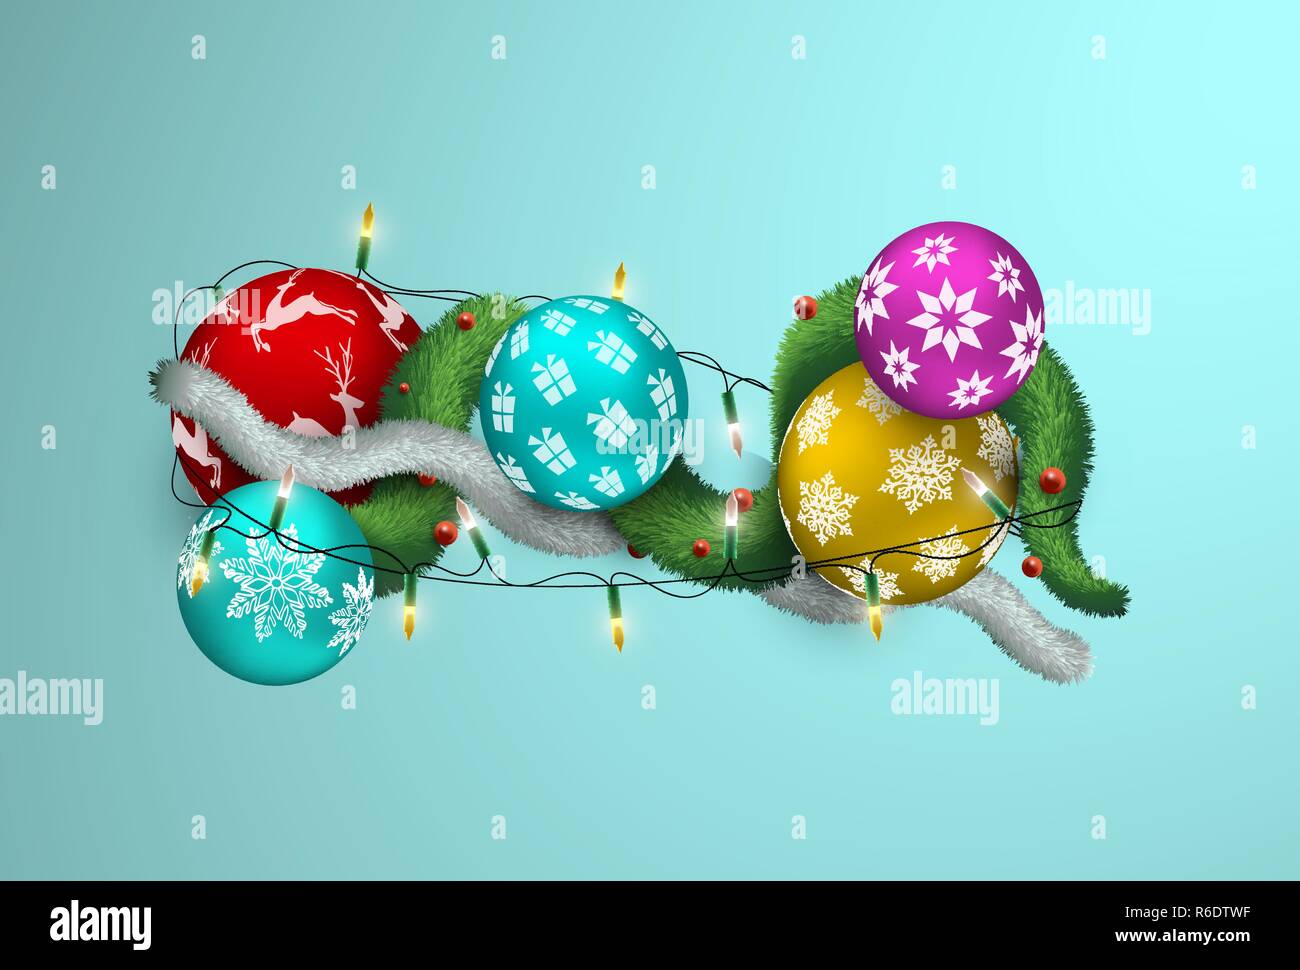 Feliz Navidad y un feliz año nuevo ilustración 3D realistas y coloridos adornos de adornos de navidad con luces y guirnaldas de pino. Vacaciones multicolores b Ilustración del Vector